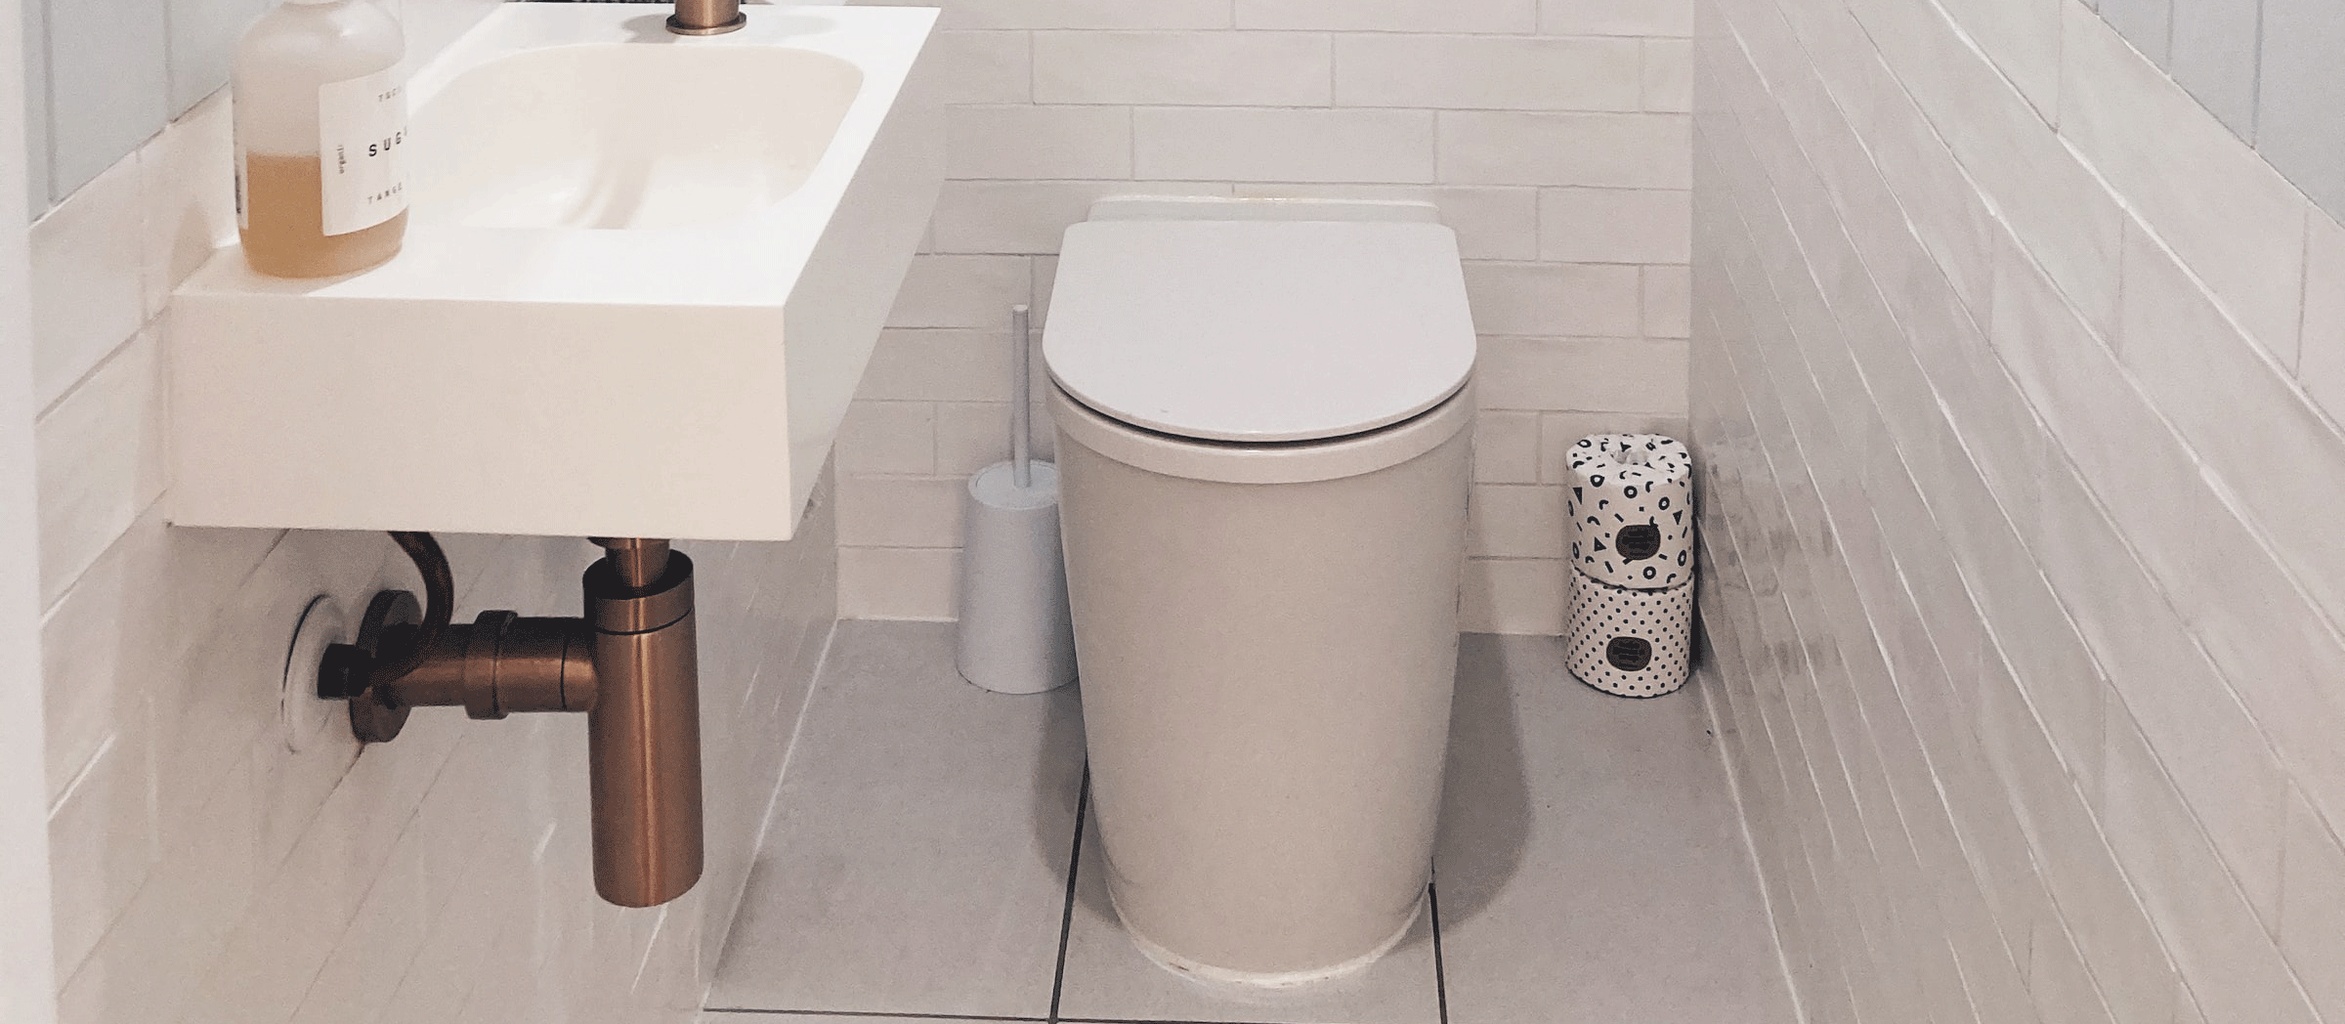 Installer des toilettes sèches dans une maison : les avantages et